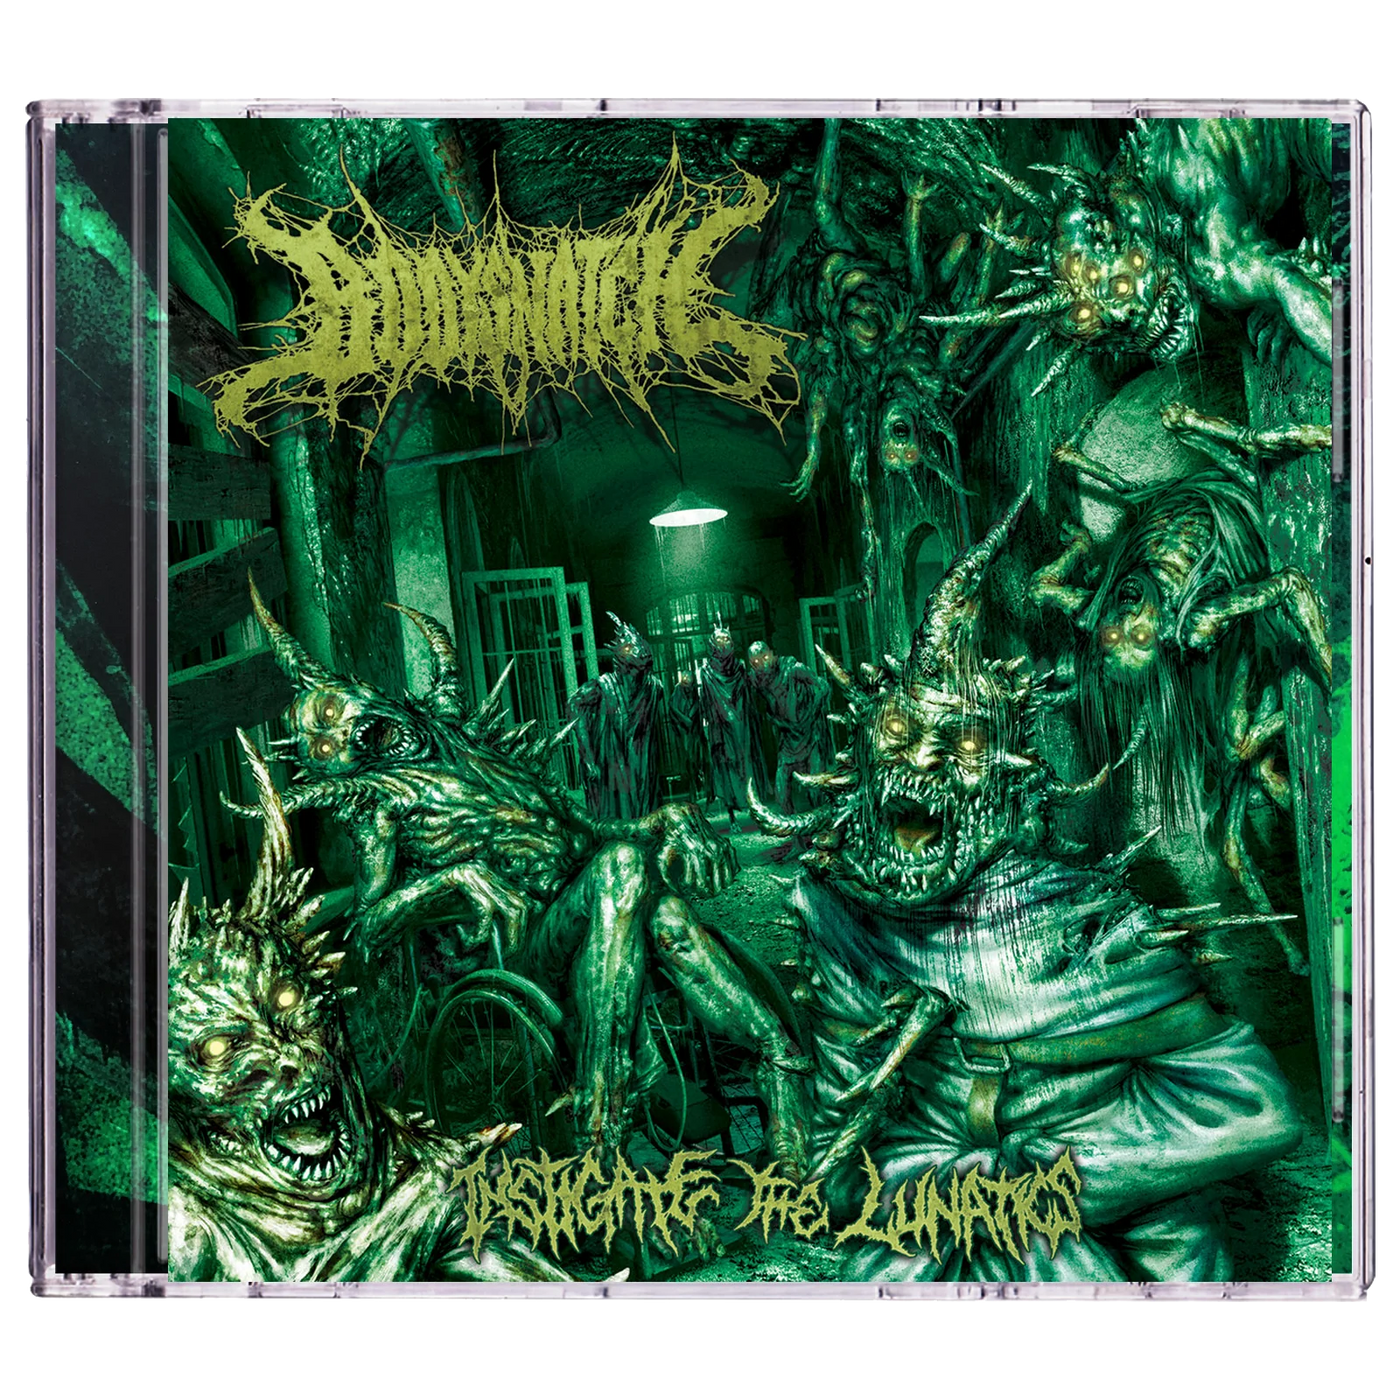 Bodysnatch 'Instigate The Lunatics' CD